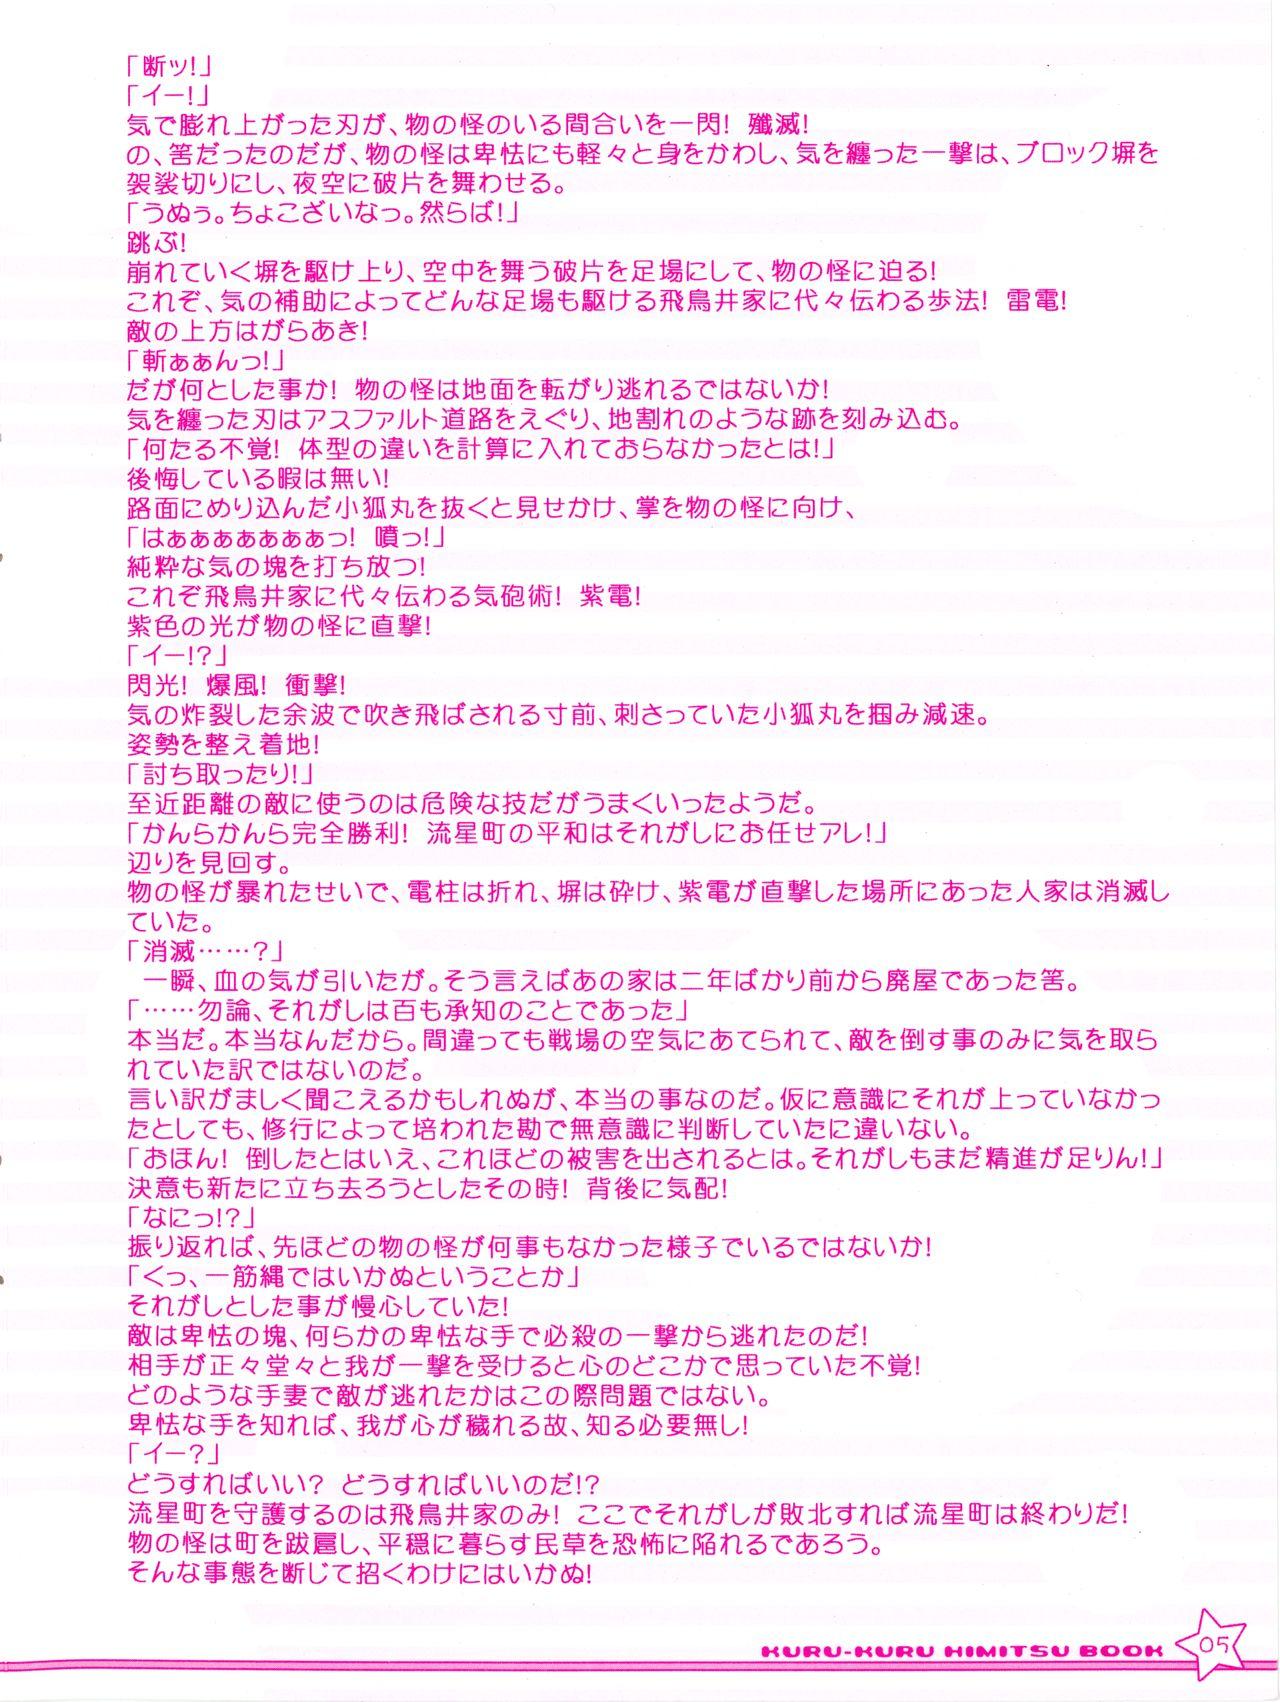 Massive Twinkle☆Crusaders Kurukuru Most Secret Booklet - Twinkle crusaders Horny Slut - Page 5